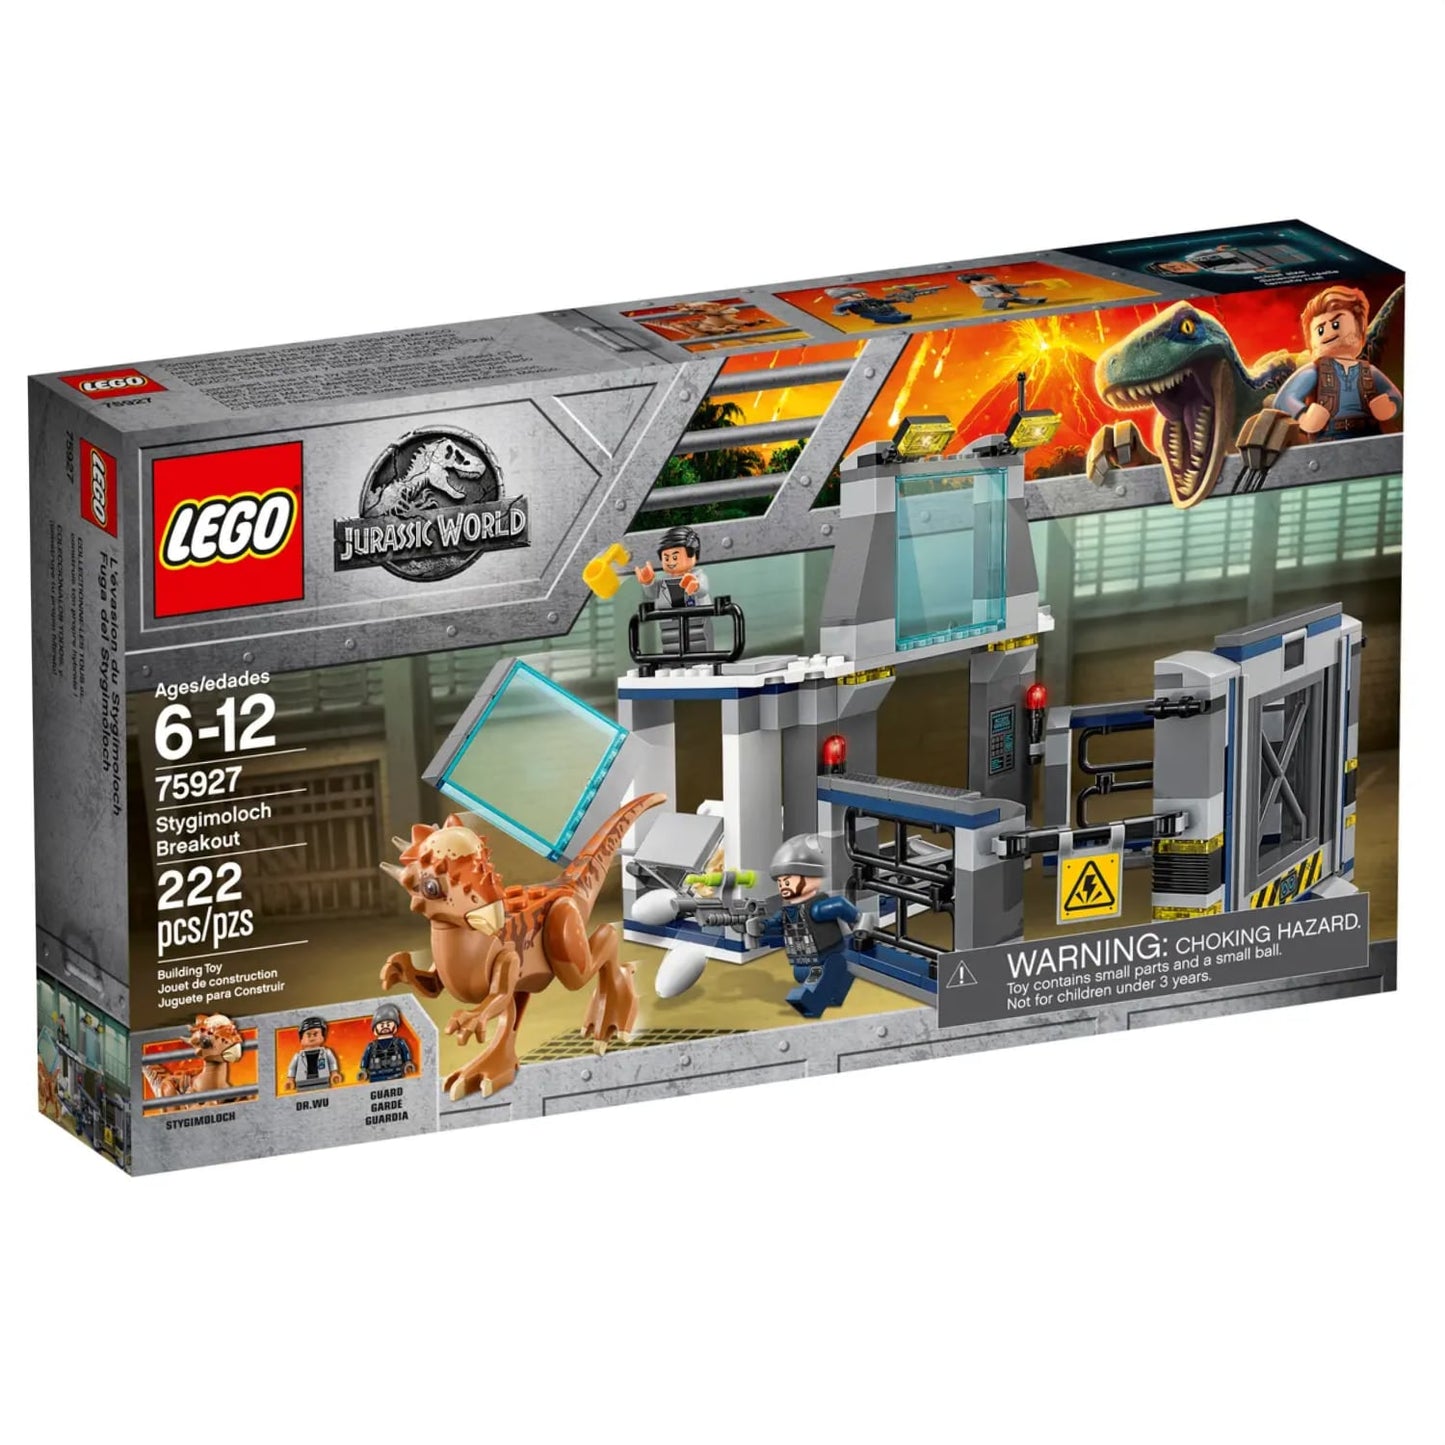 Lego 75927 Jurassic World Fallen Kingdom Stygimoloch Breakout